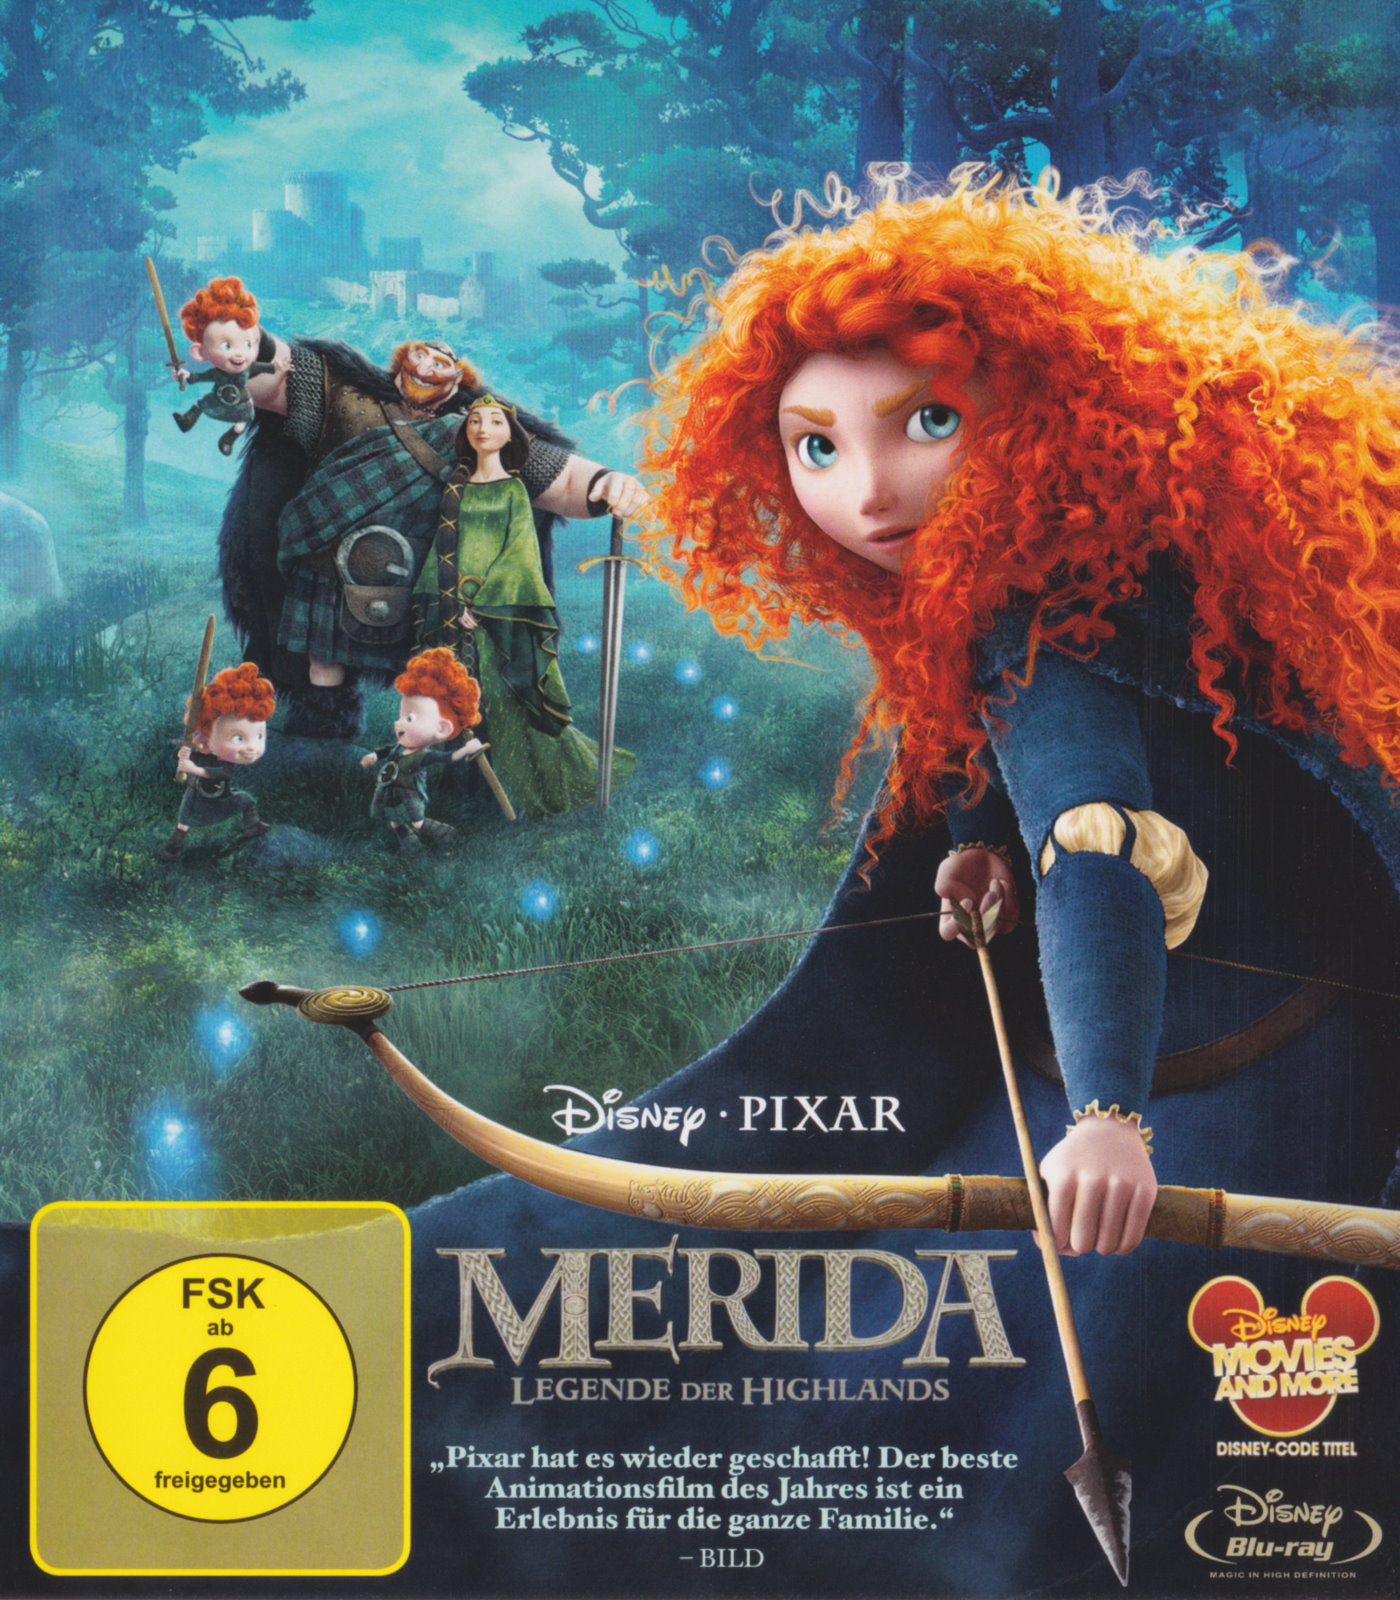 Cover - Merida - Legende der Highlands.jpg